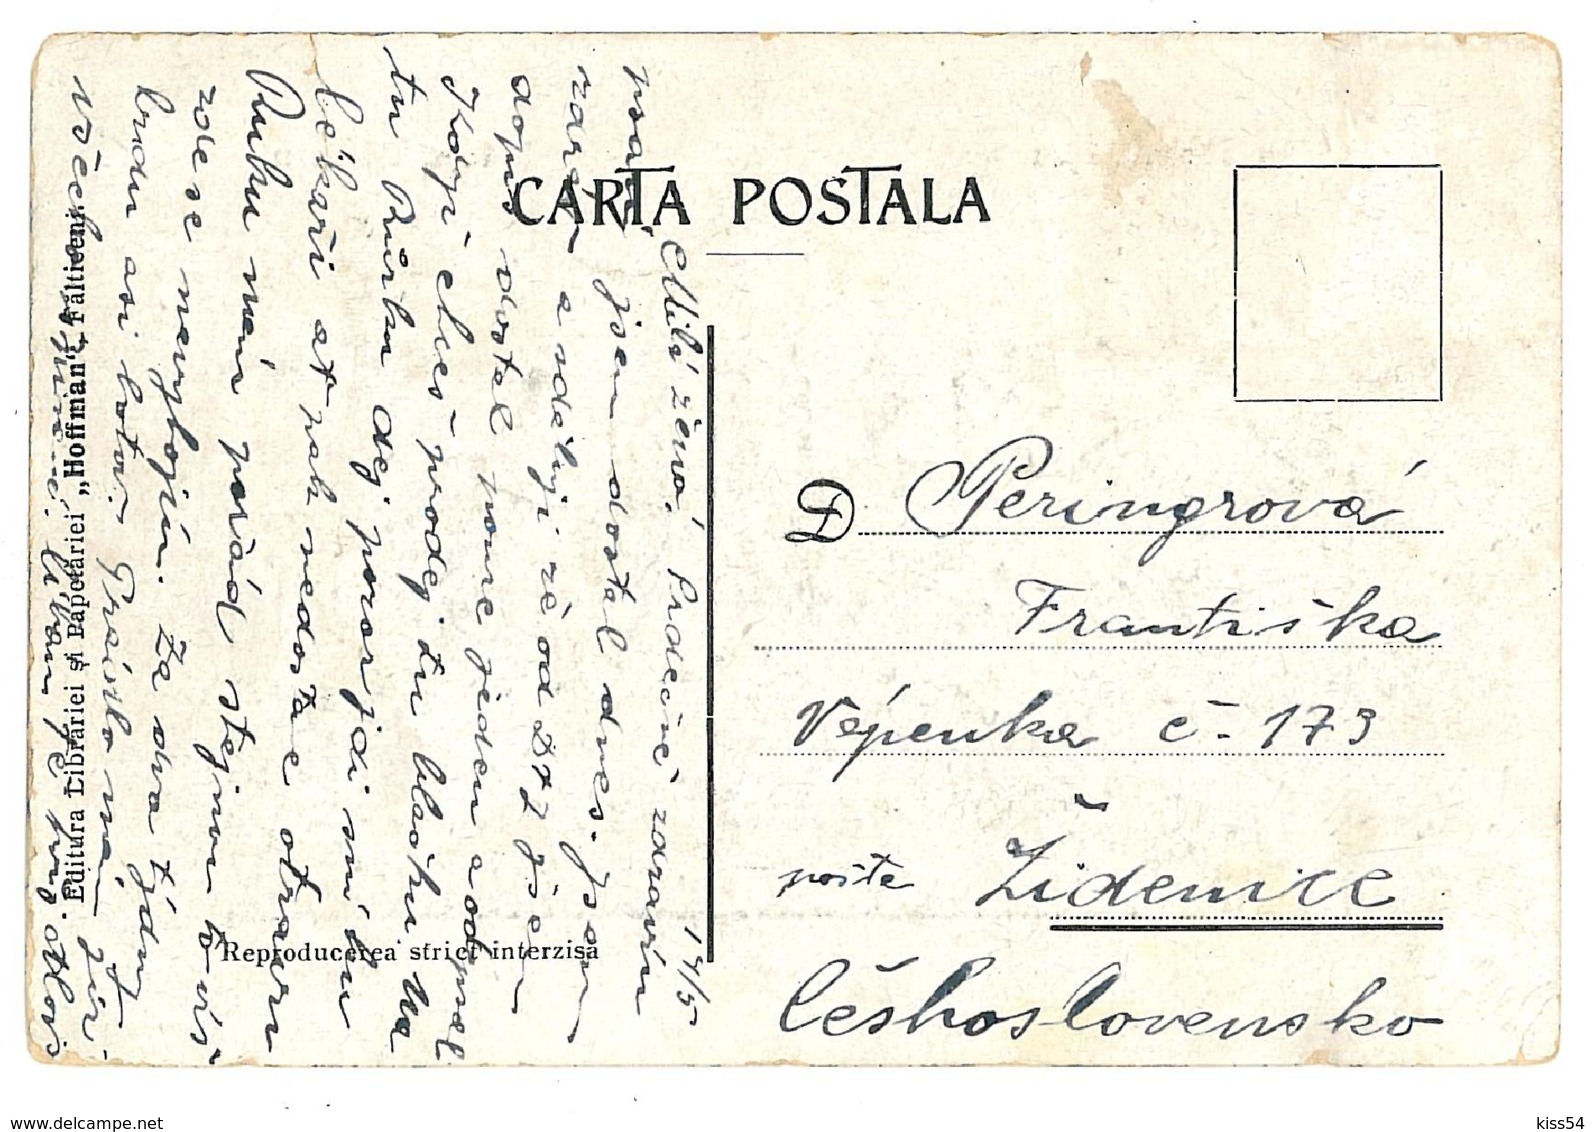 RO 63 - 9599 RASCA, Jud Falticeni, Bukowina, Romania - Old Postcard - Used - 1915 - Rumänien